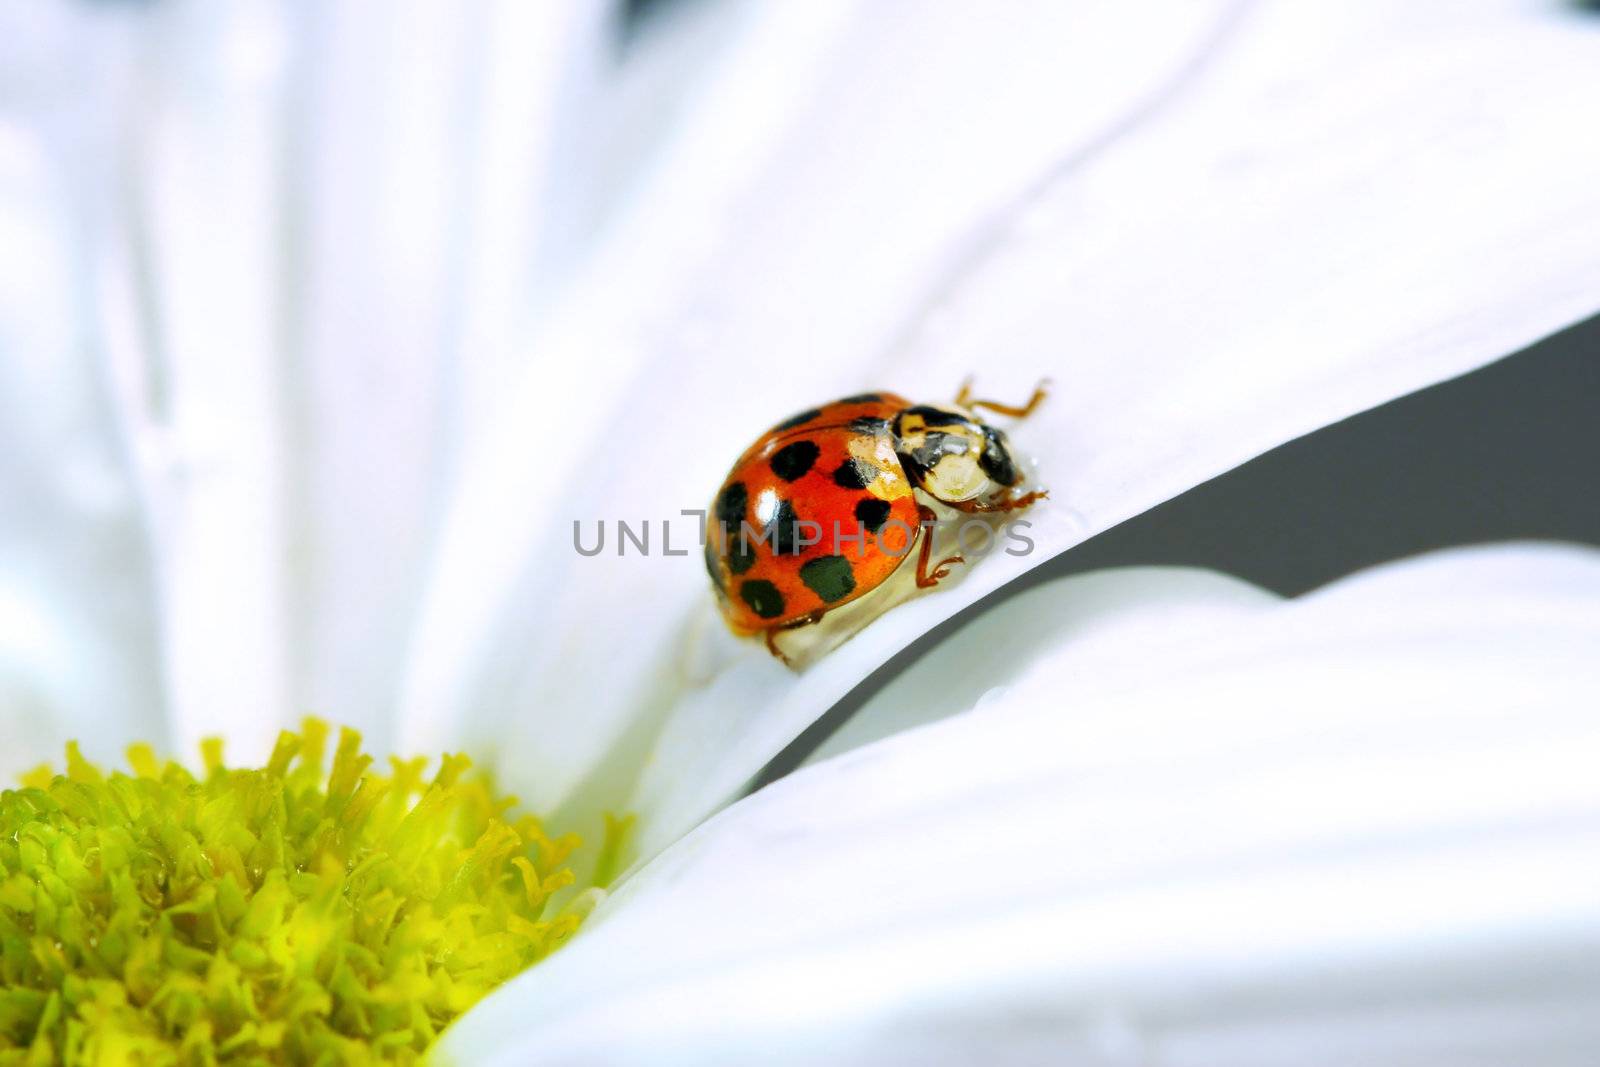 Little ladybug on daisy by Sandralise